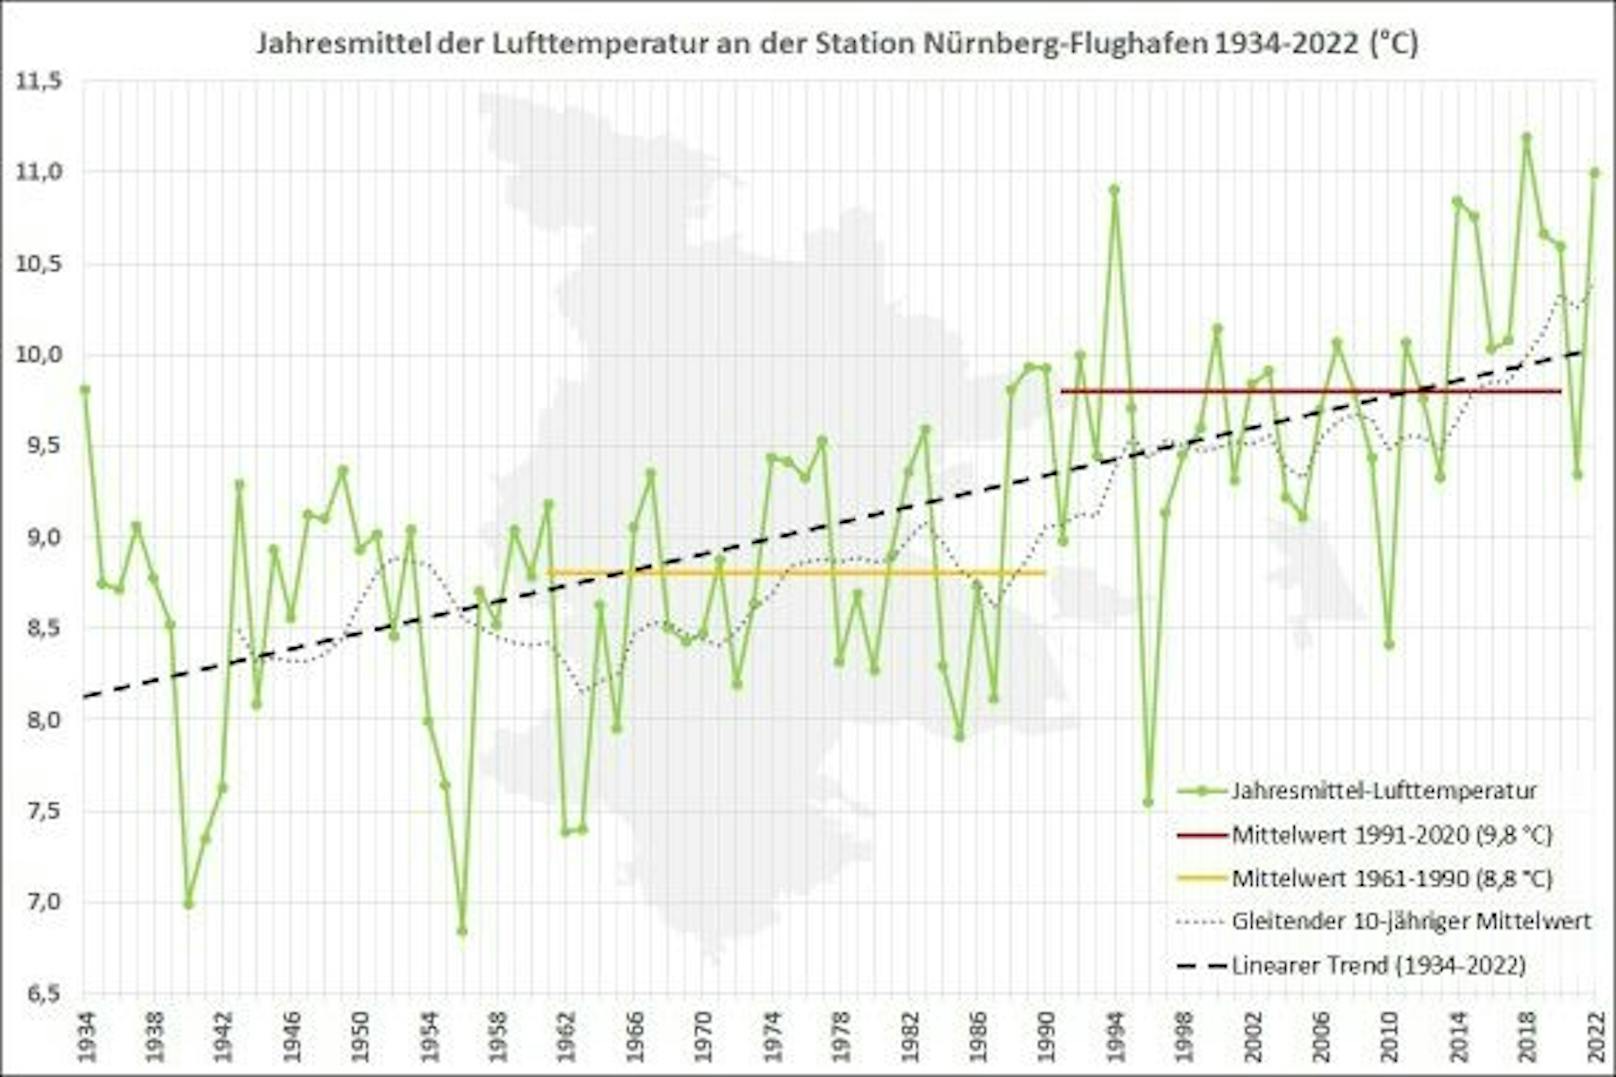 Entwicklung der Jahresmittel-Lufttemperatur an der Station Nürnberg-Flughafen seit 1934